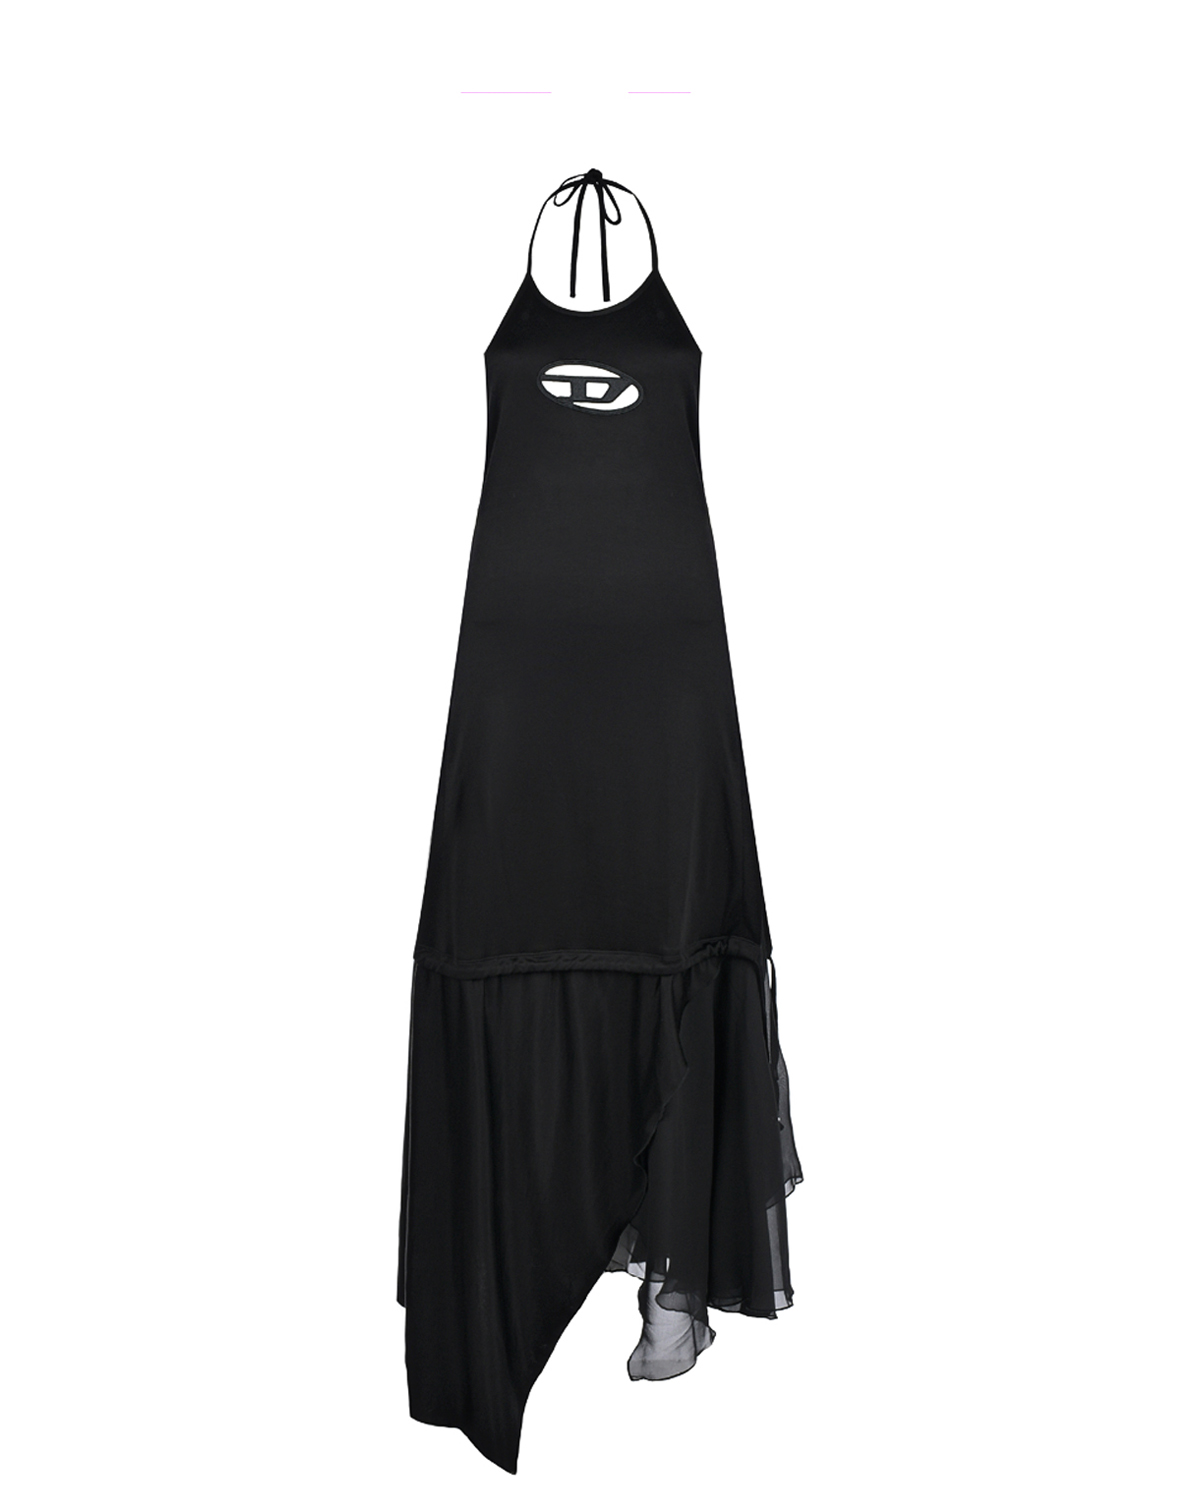 Асимметричное платье с патчем Diesel, размер 42, цвет черный - фото 1